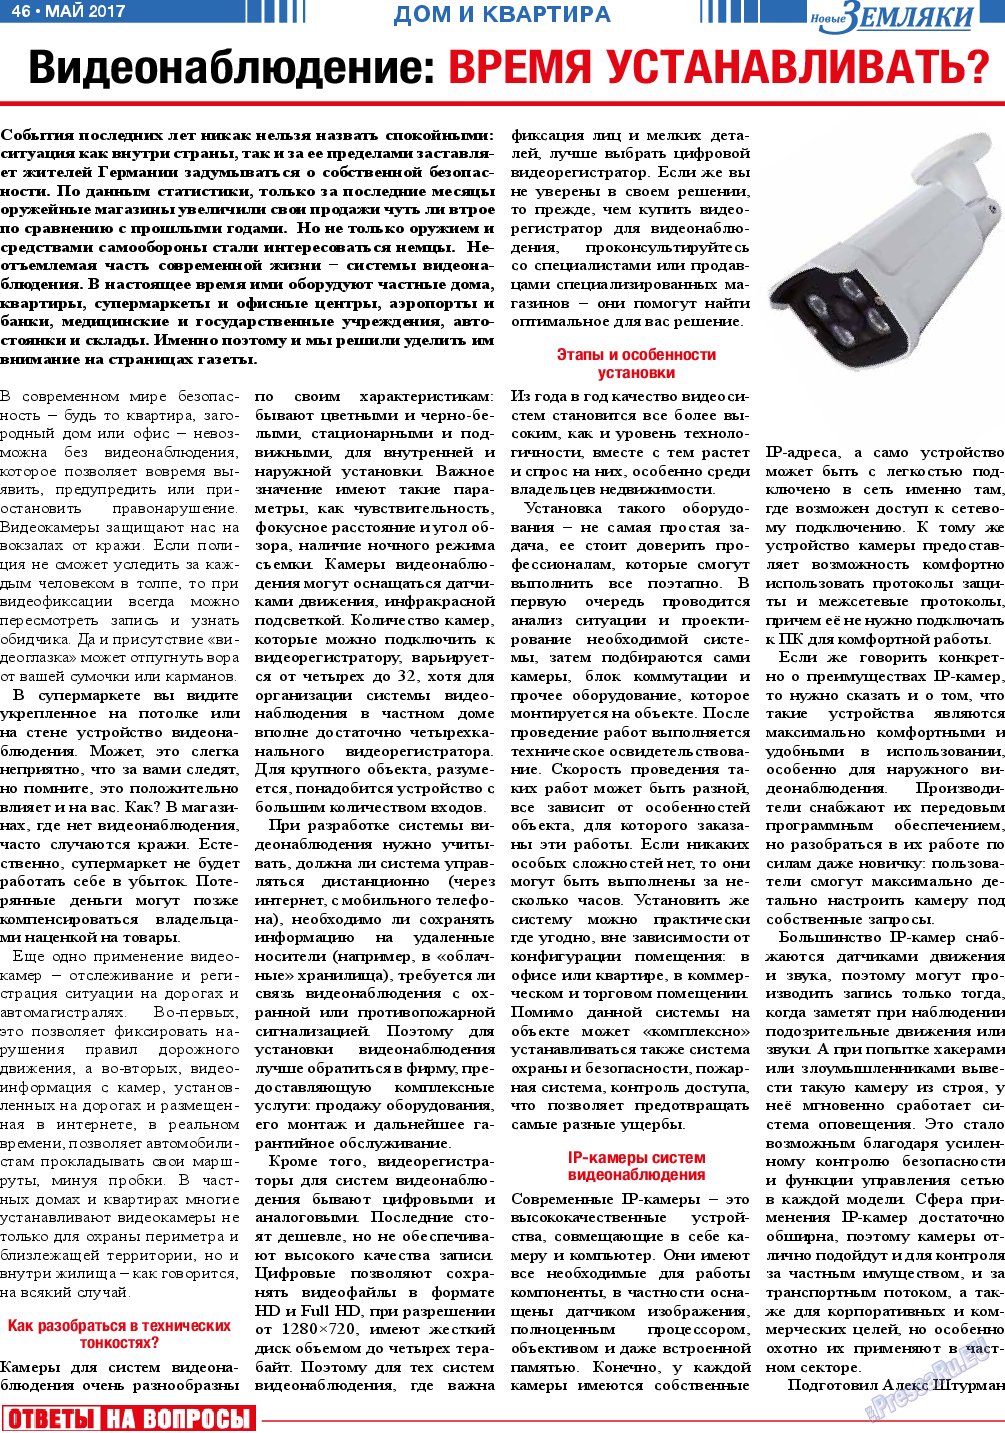 Новые Земляки (газета). 2017 год, номер 5, стр. 46